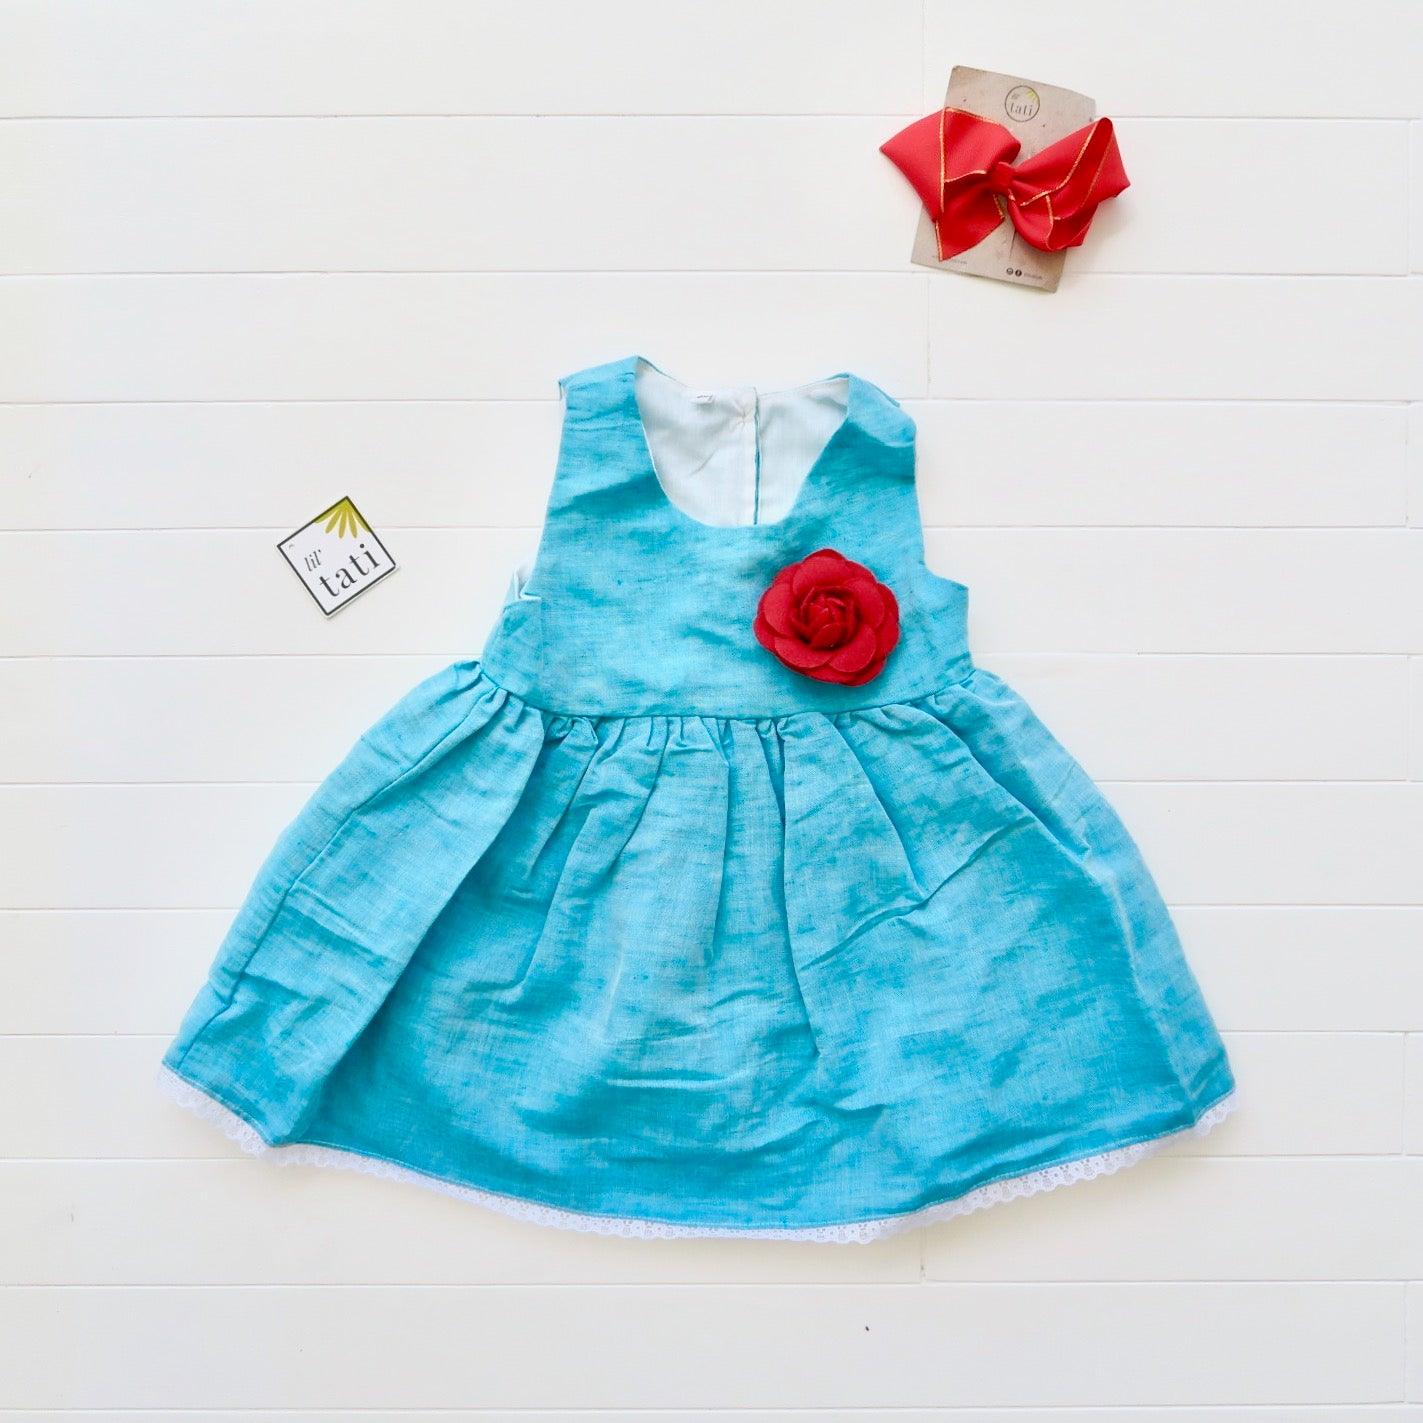 Iris Dress in Bluegreen Linen - Lil' Tati